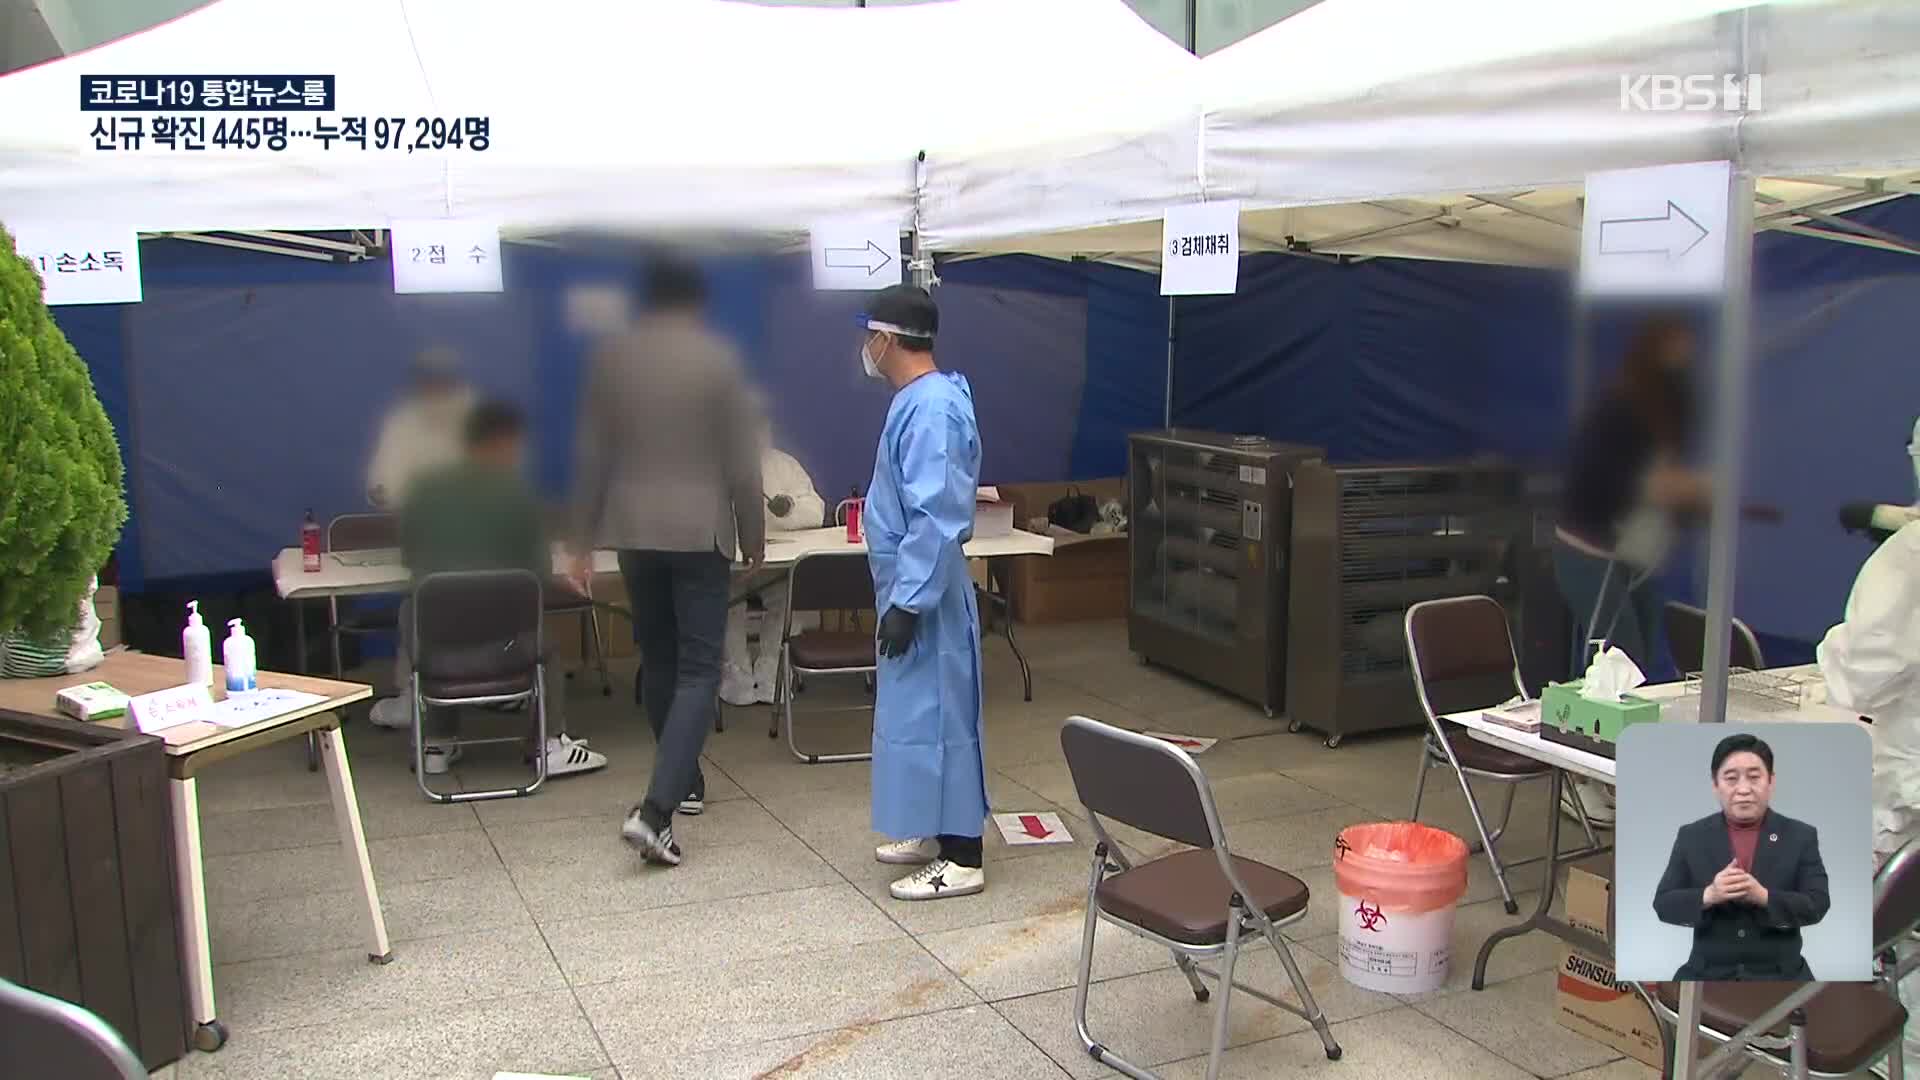 경기 신규 확진 159명, ‘감염경로 불명’ 남동부 지역 집중